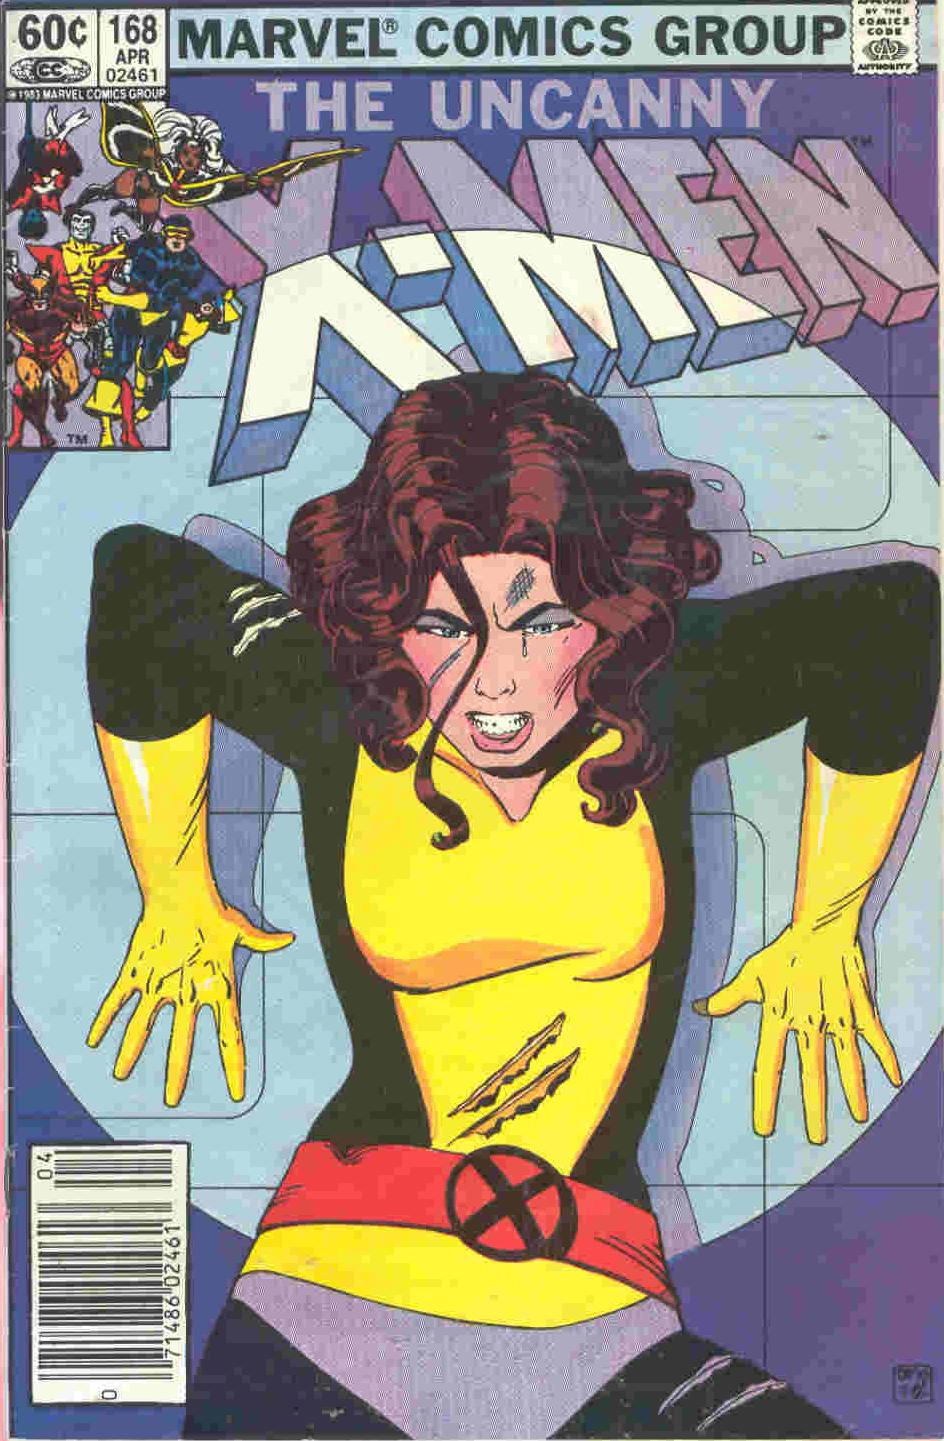 Uncanny X-Men Vol. 1 #168